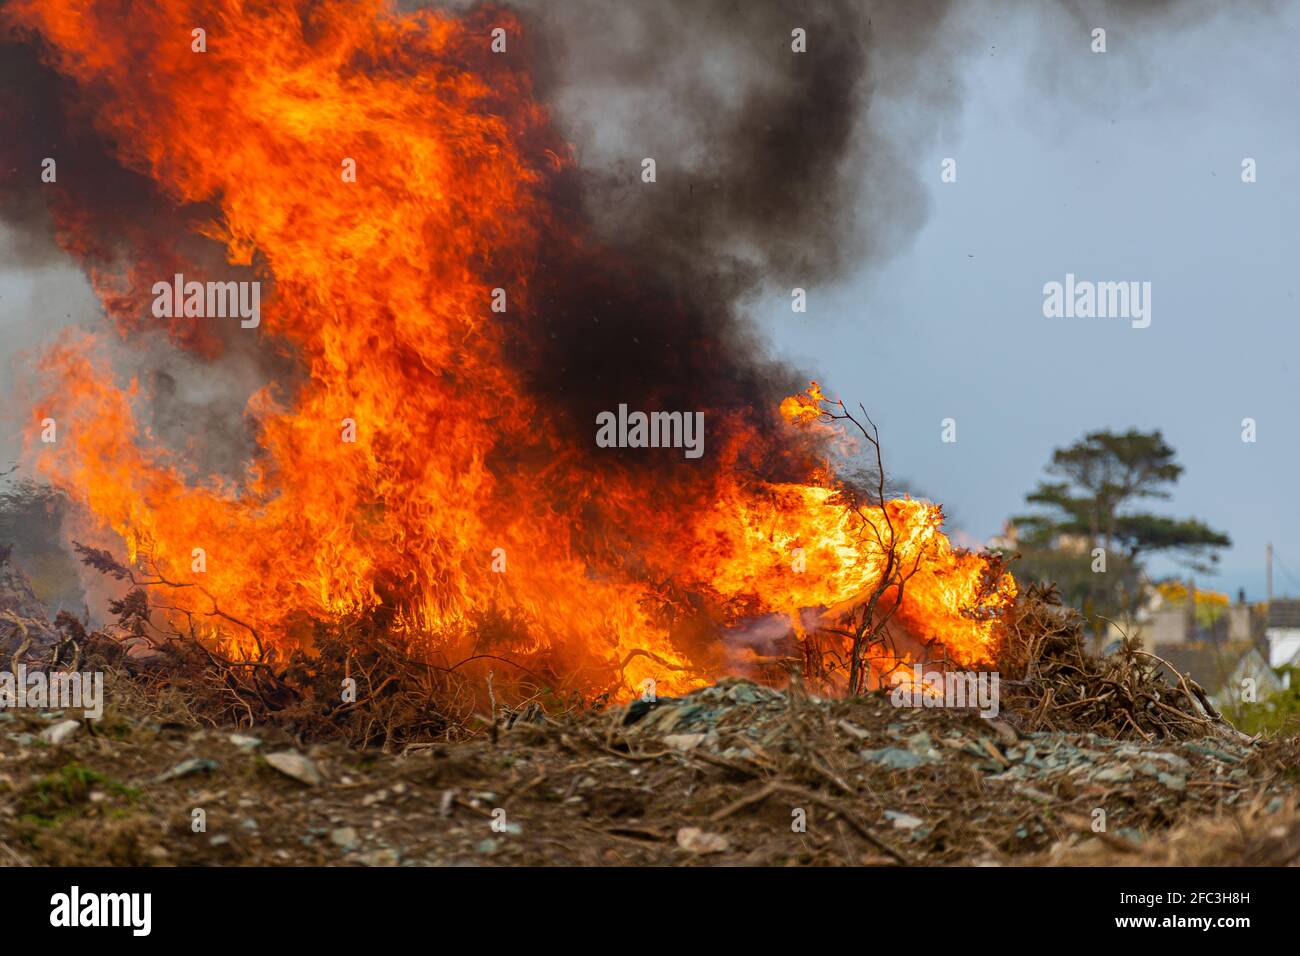 Gorse burning. Stock Photo